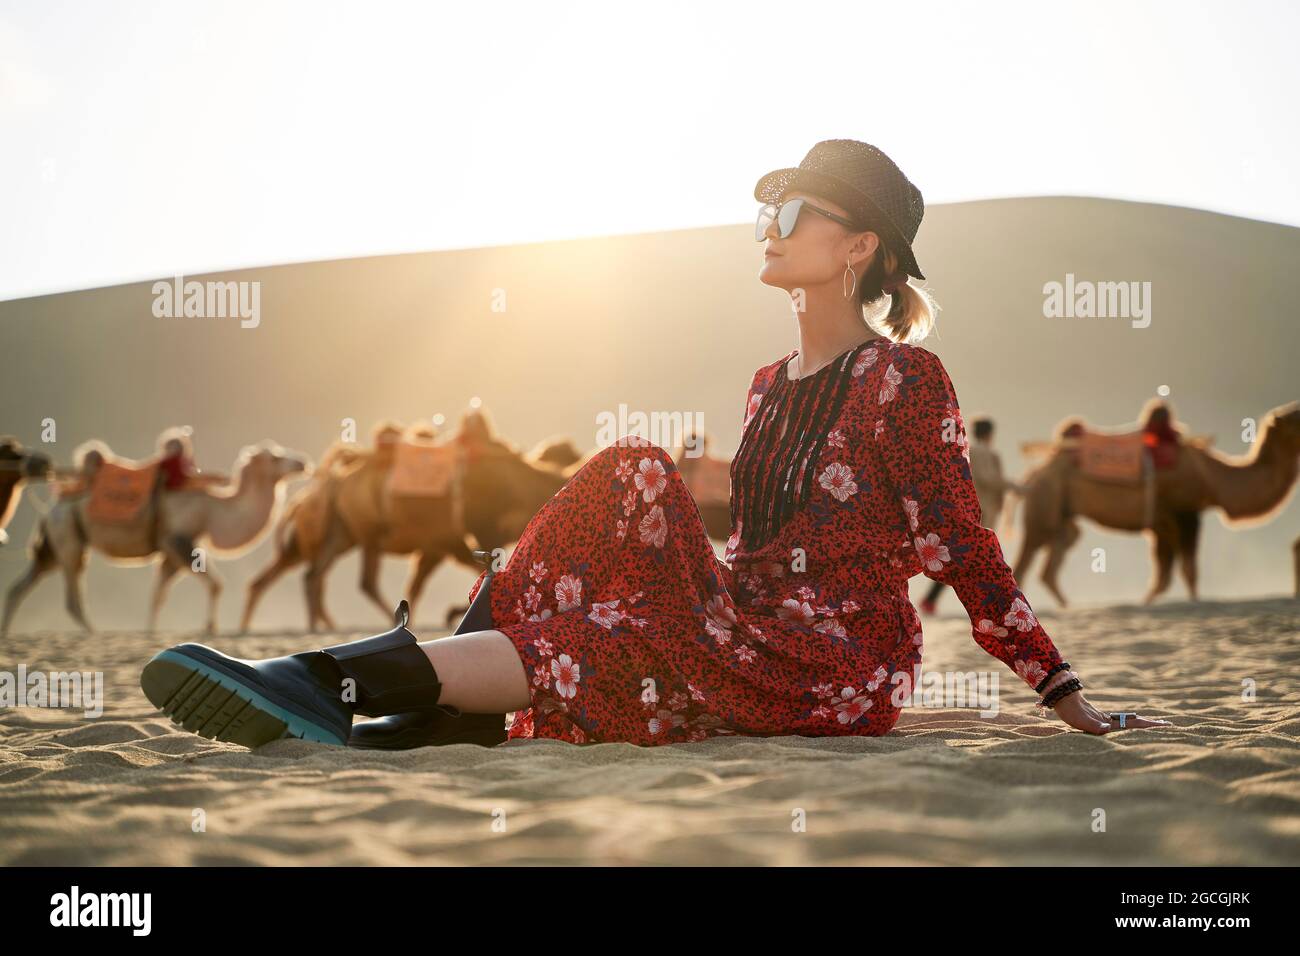 donna asiatica in abito rosso seduta nel deserto guardando la vista con caravan di cammelli e enorme duna di sabbia sullo sfondo Foto Stock